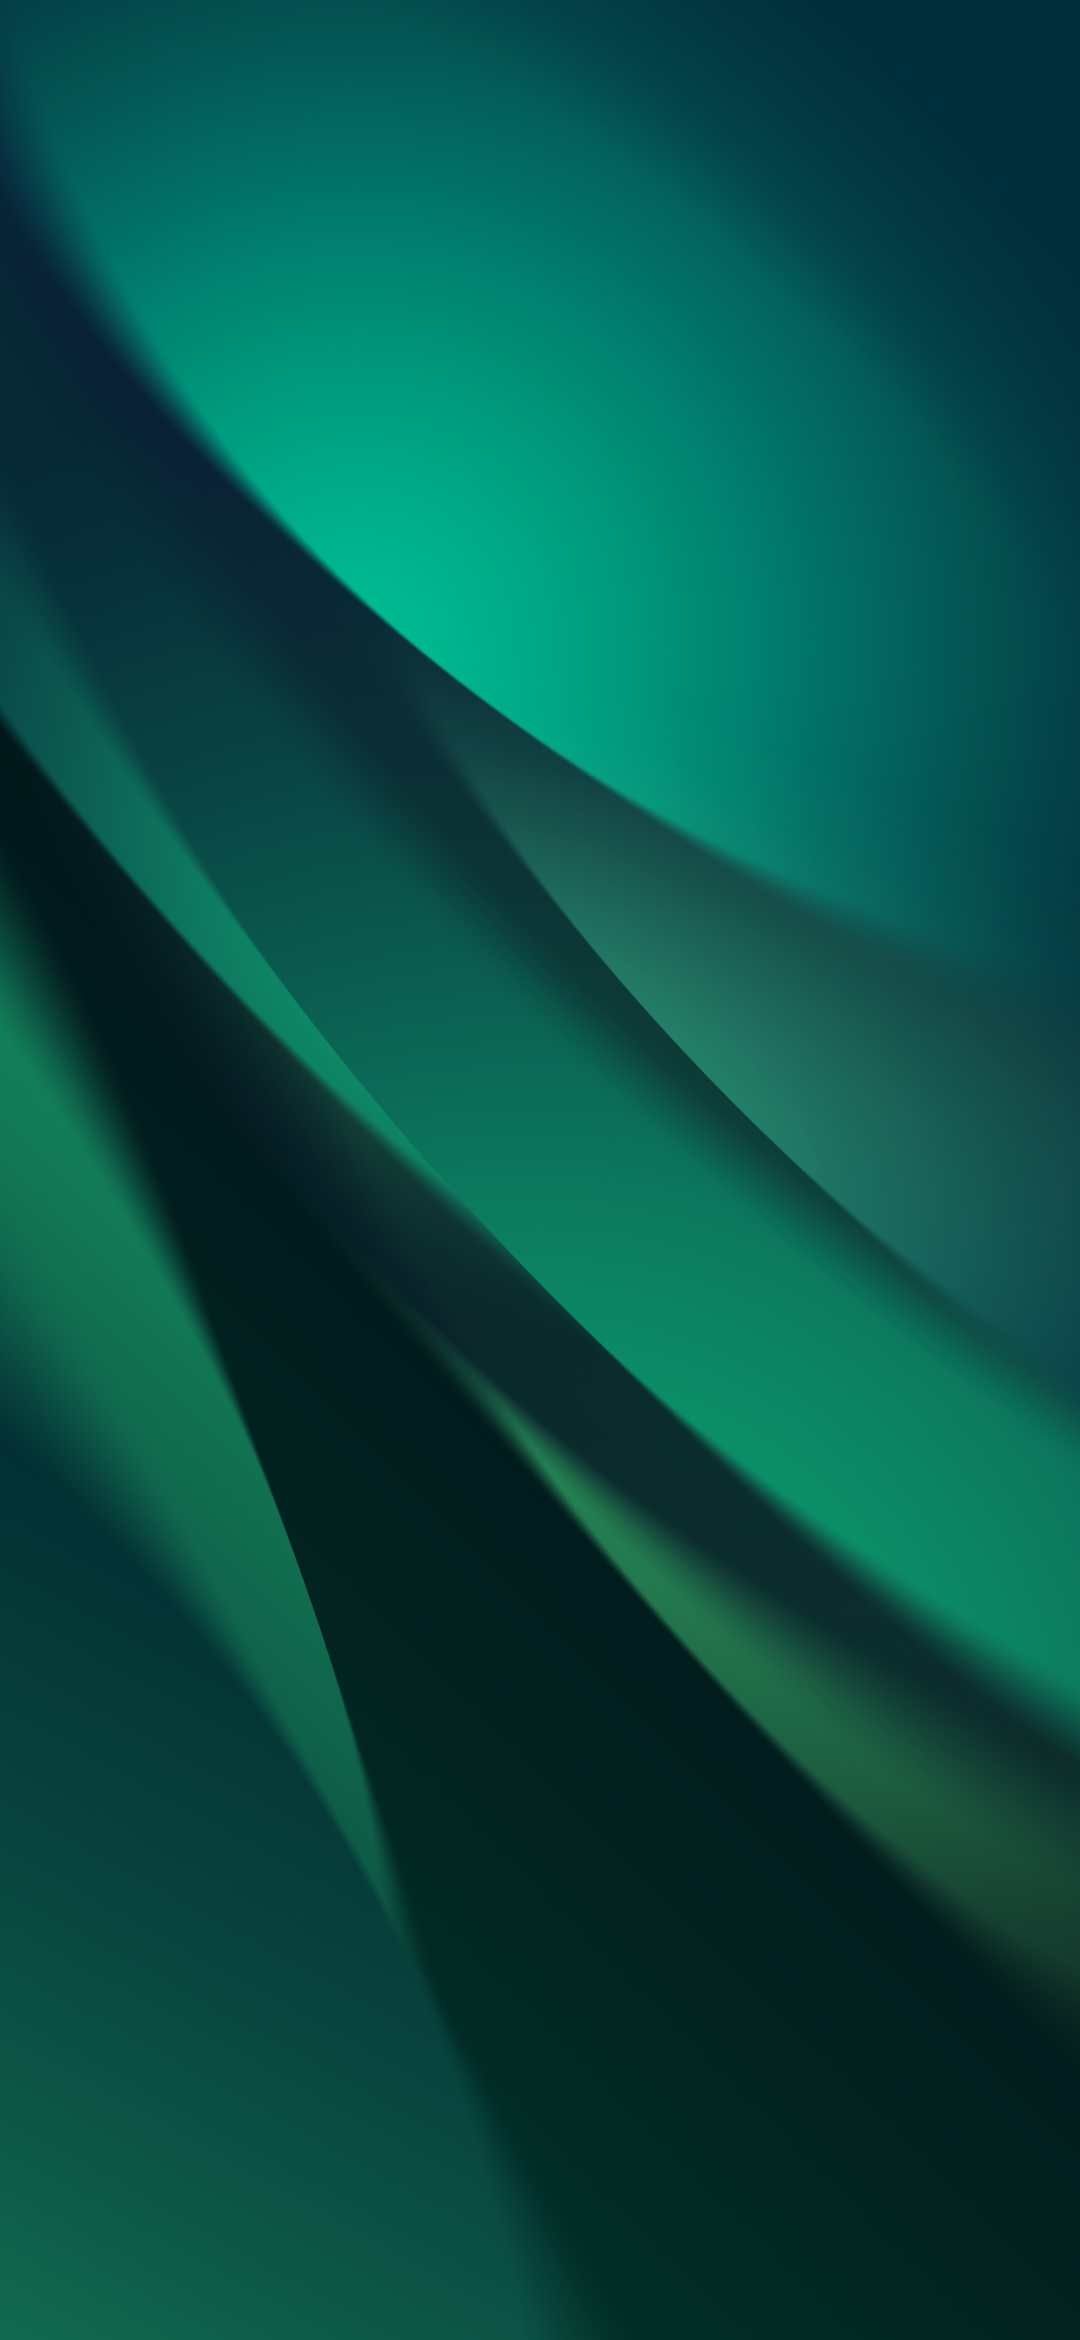 かっこいい緑のグラデーション Galaxy A30 Android 壁紙 待ち受け スマラン